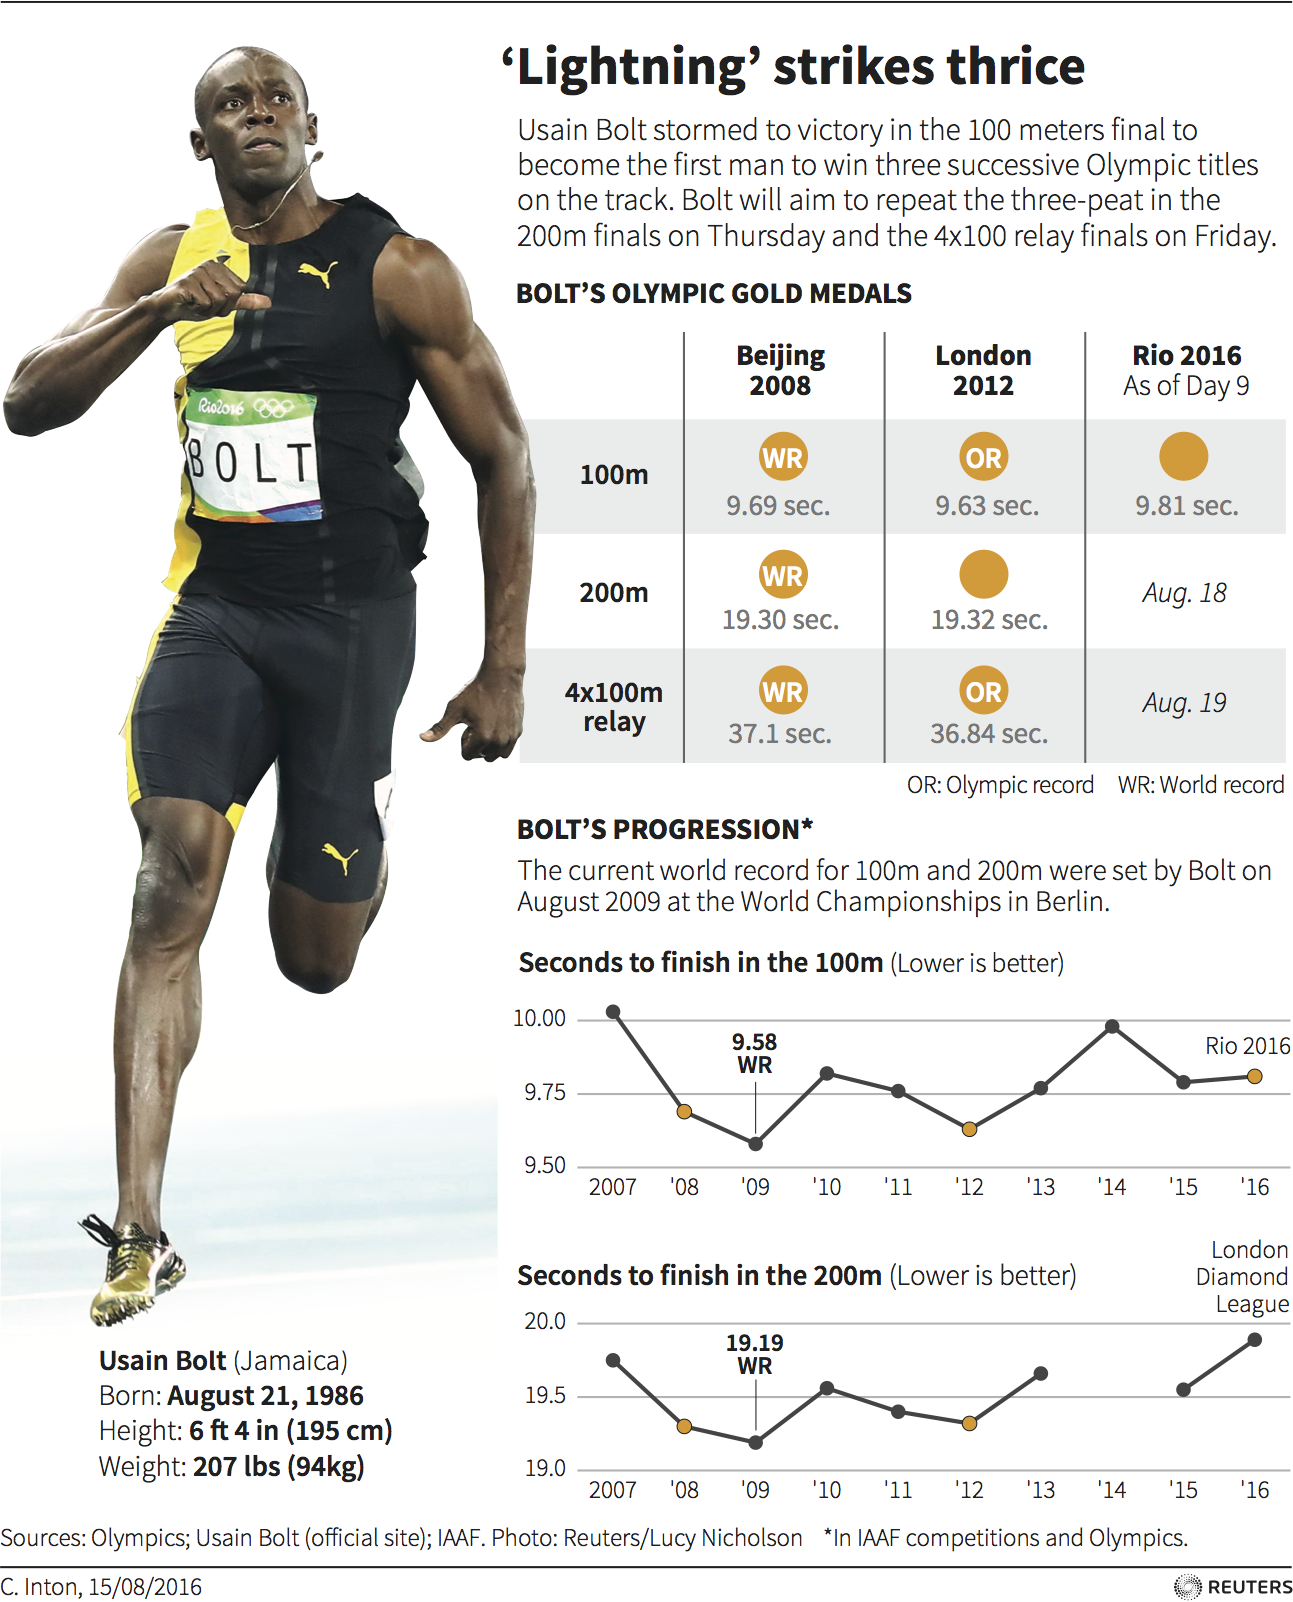 Усейн болт скорость км ч. Усейн болт 100 метров мировой рекорд. Усейн болт рекорд 100м. Усейн болт бег 100 метров. Рекорд Усейна болта на 100м скорость.